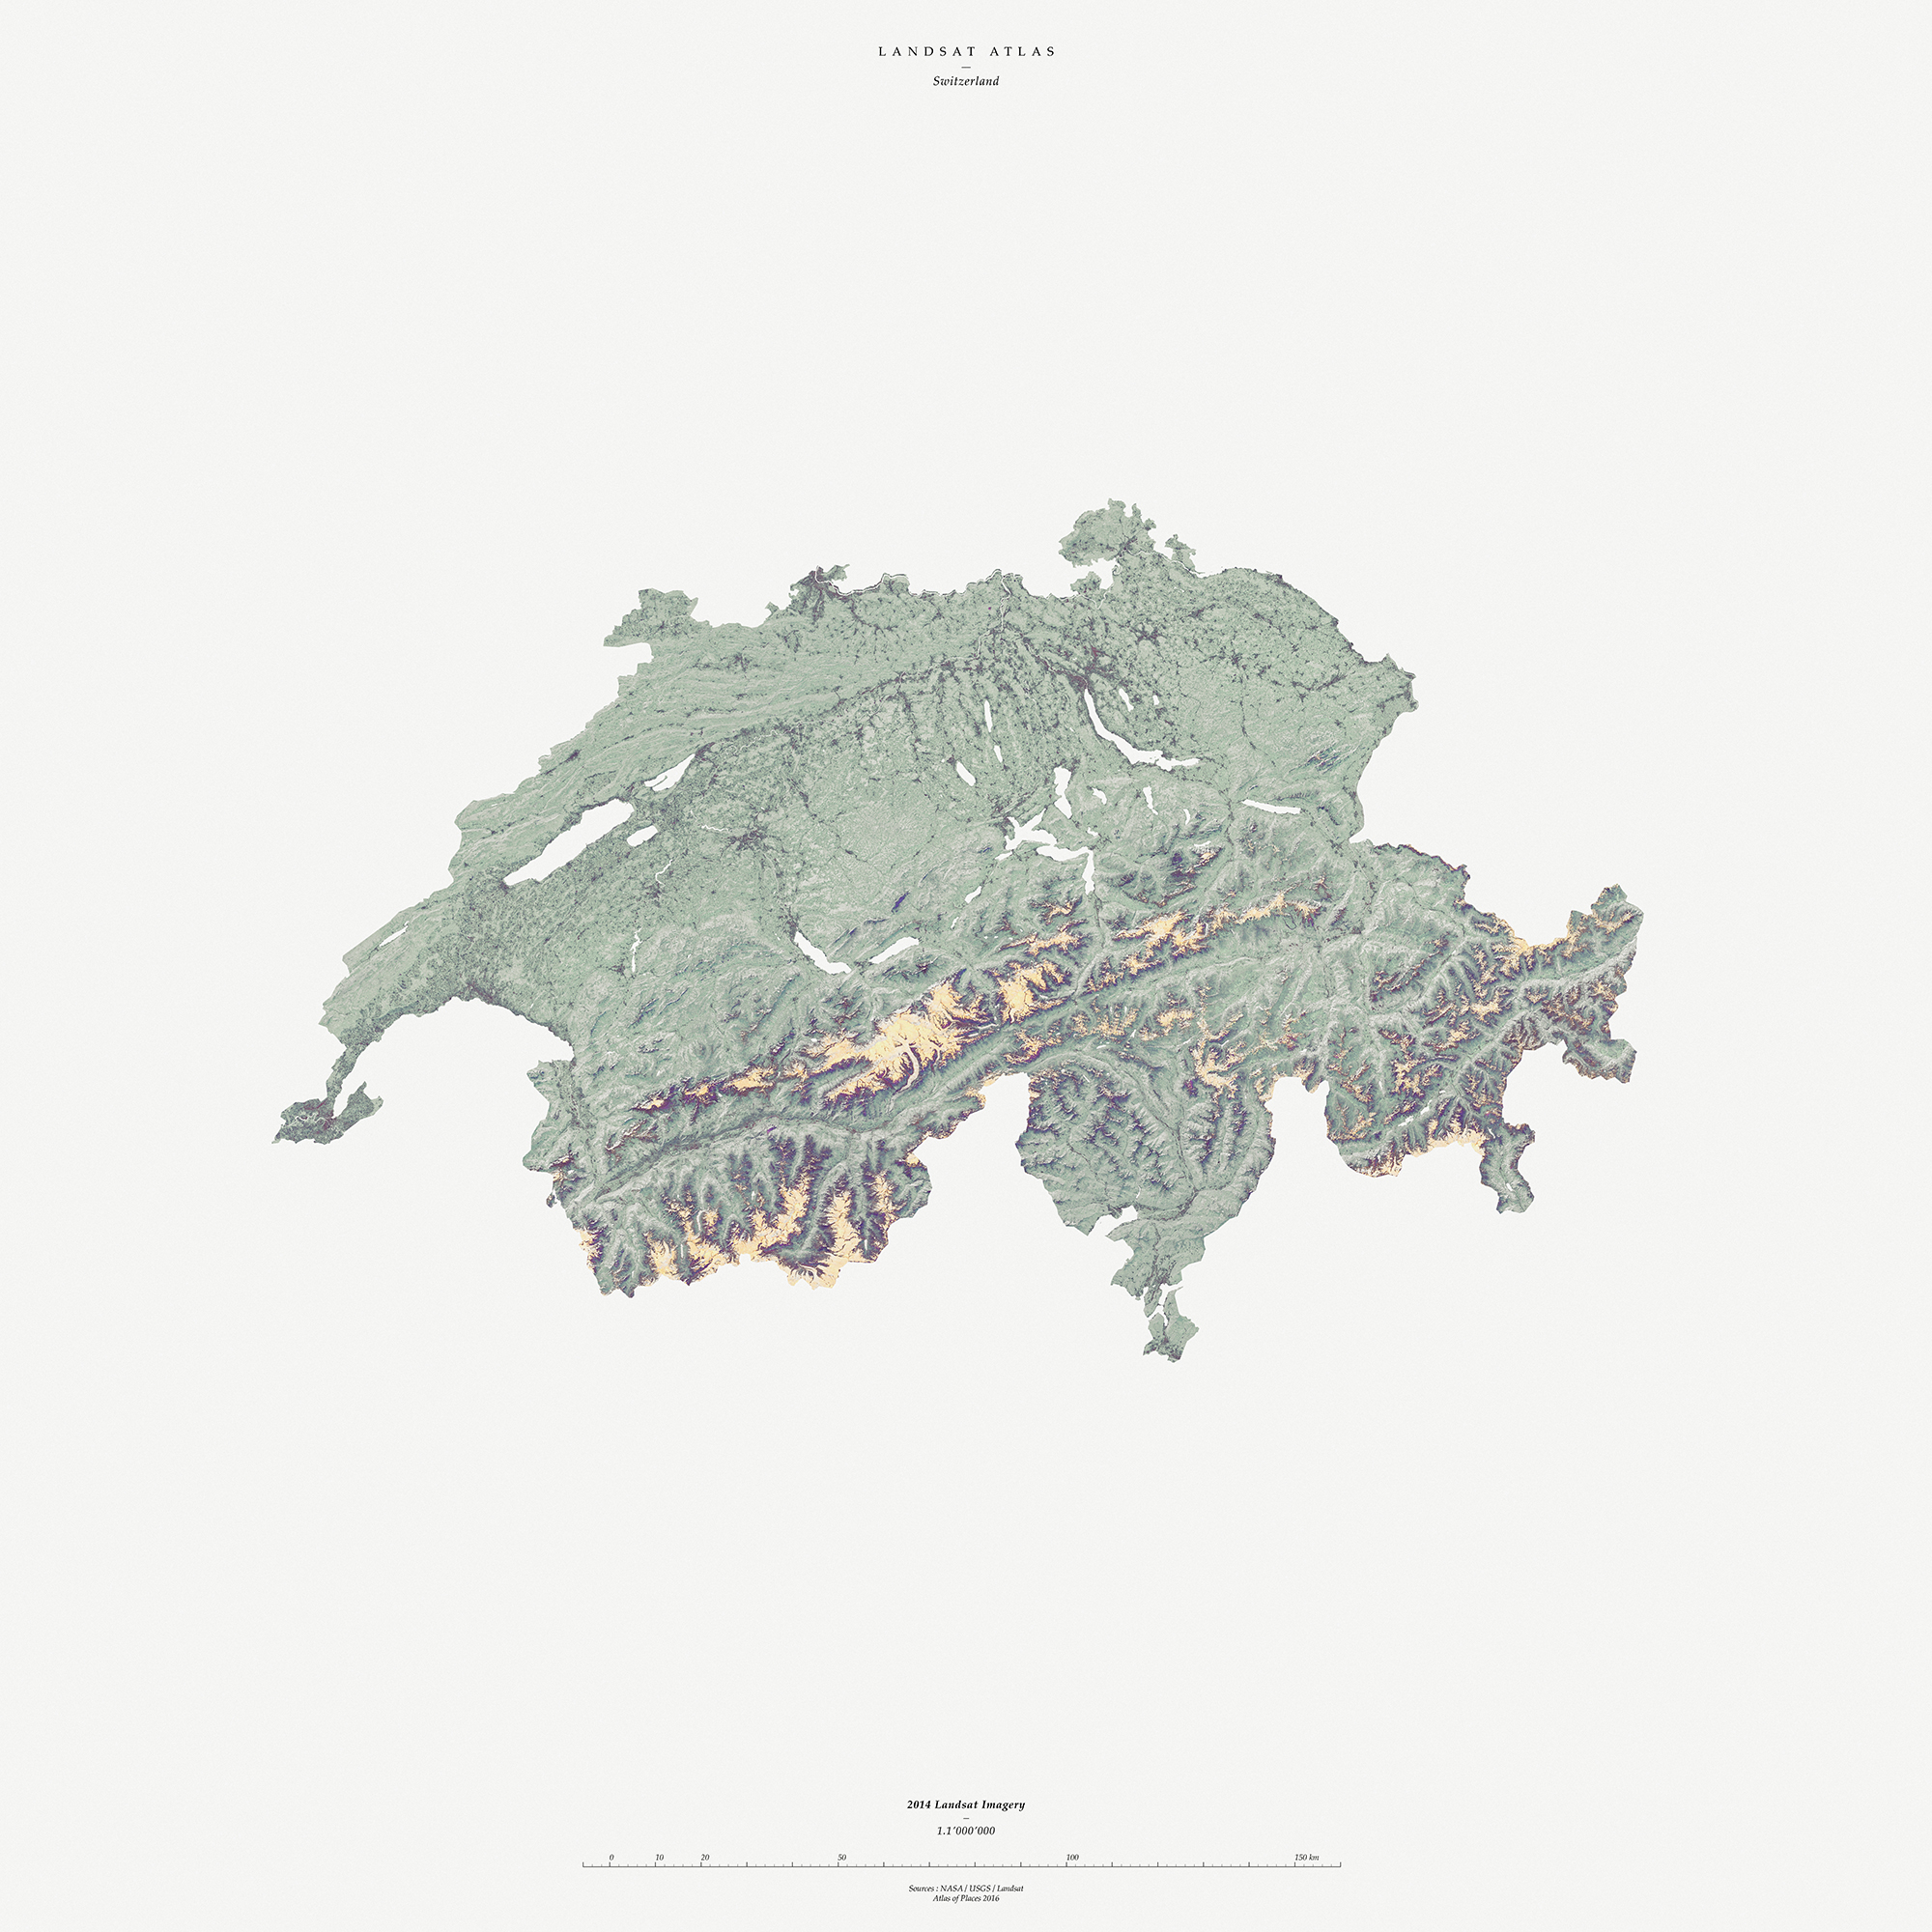 Atlas of Landsat I